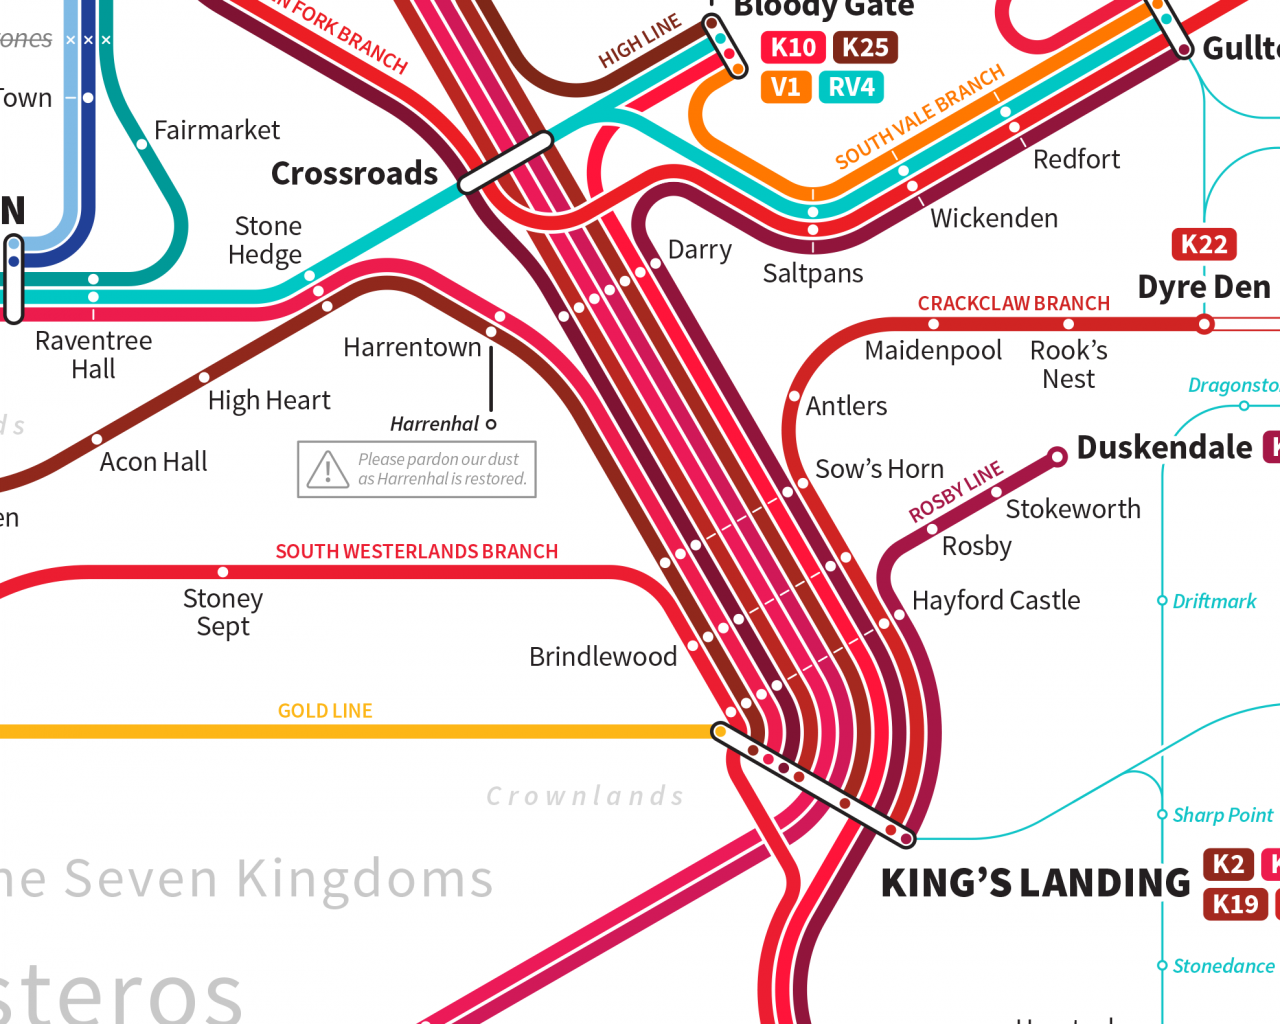 Planlegg reisene dine gjennom Westeros med dette detaljerte T-banekartet